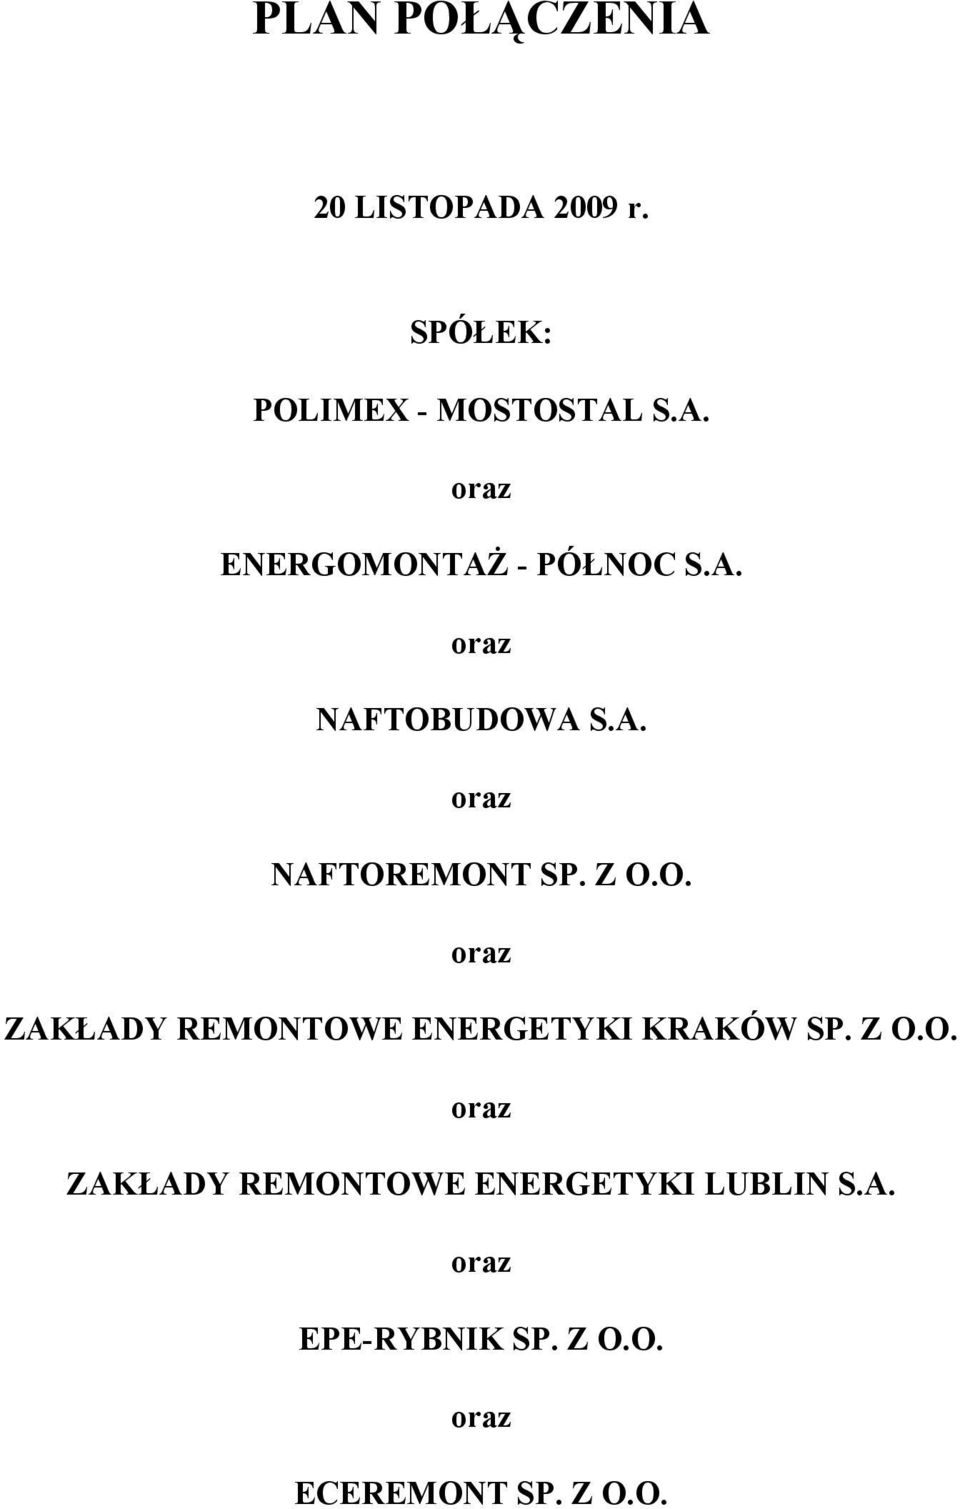 Z O.O. oraz ZAKŁADY REMONTOWE ENERGETYKI LUBLIN S.A. oraz EPE-RYBNIK SP.